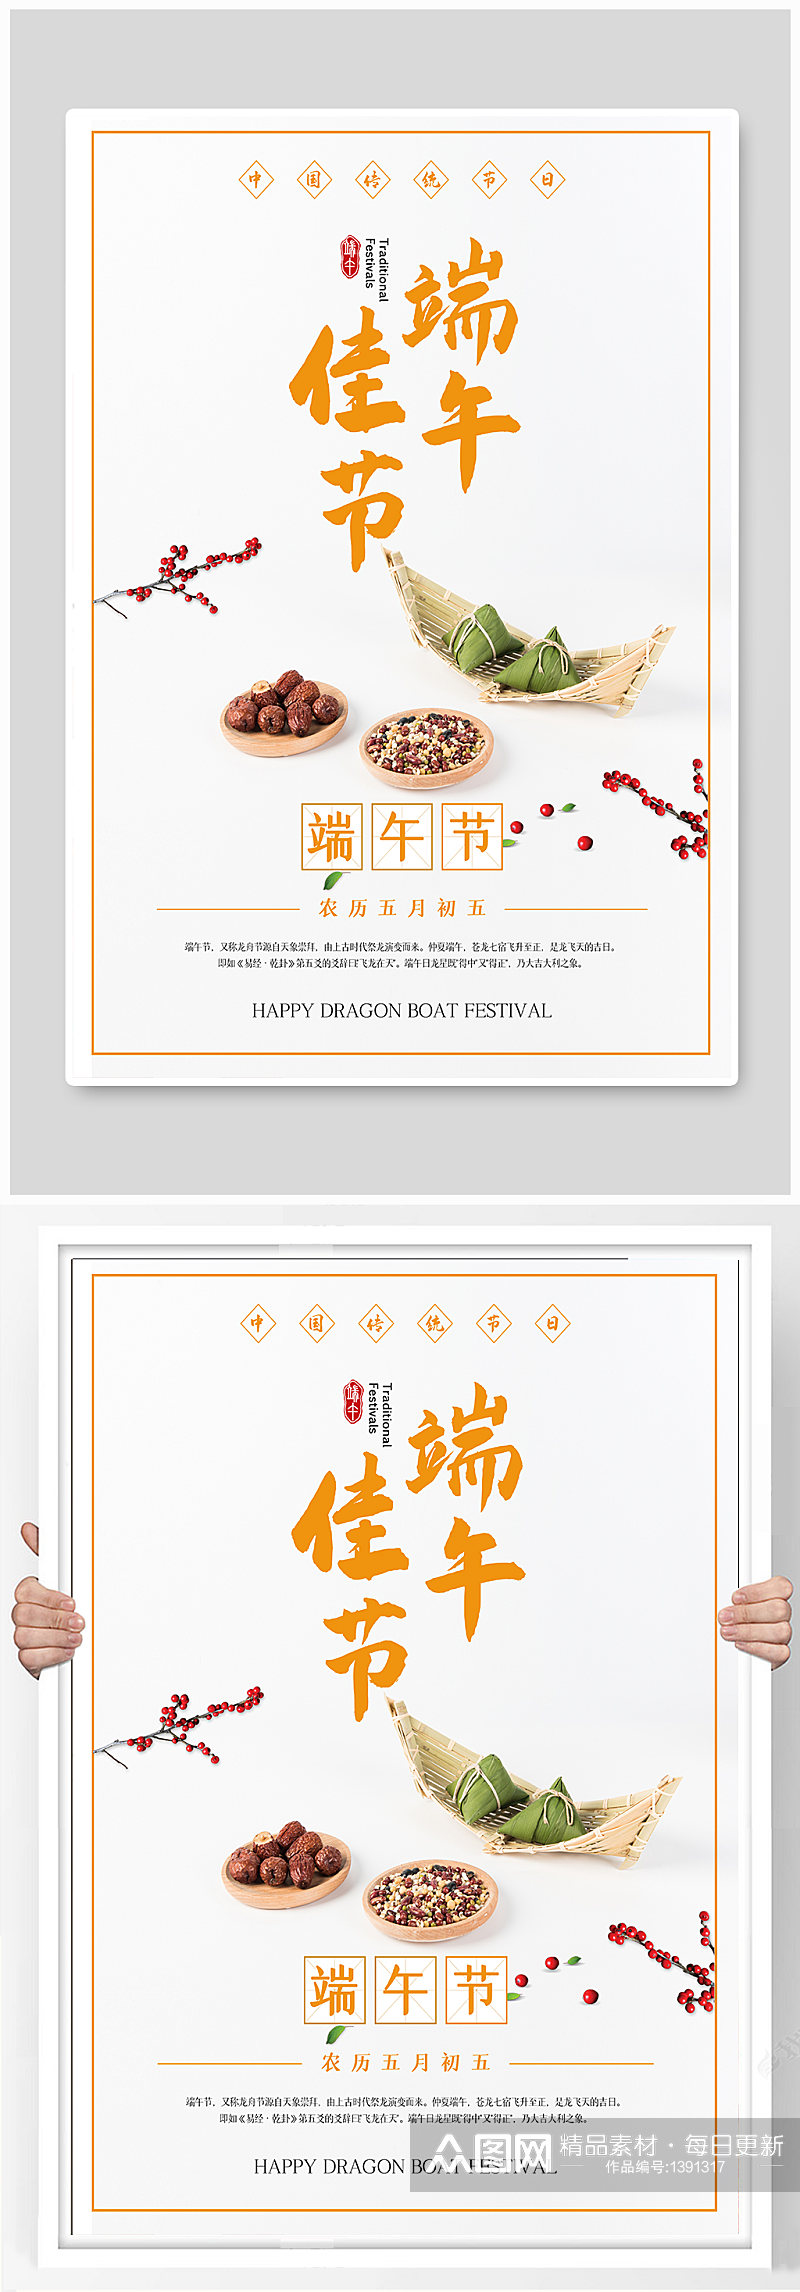 中国传统节日端午节粽子海报素材